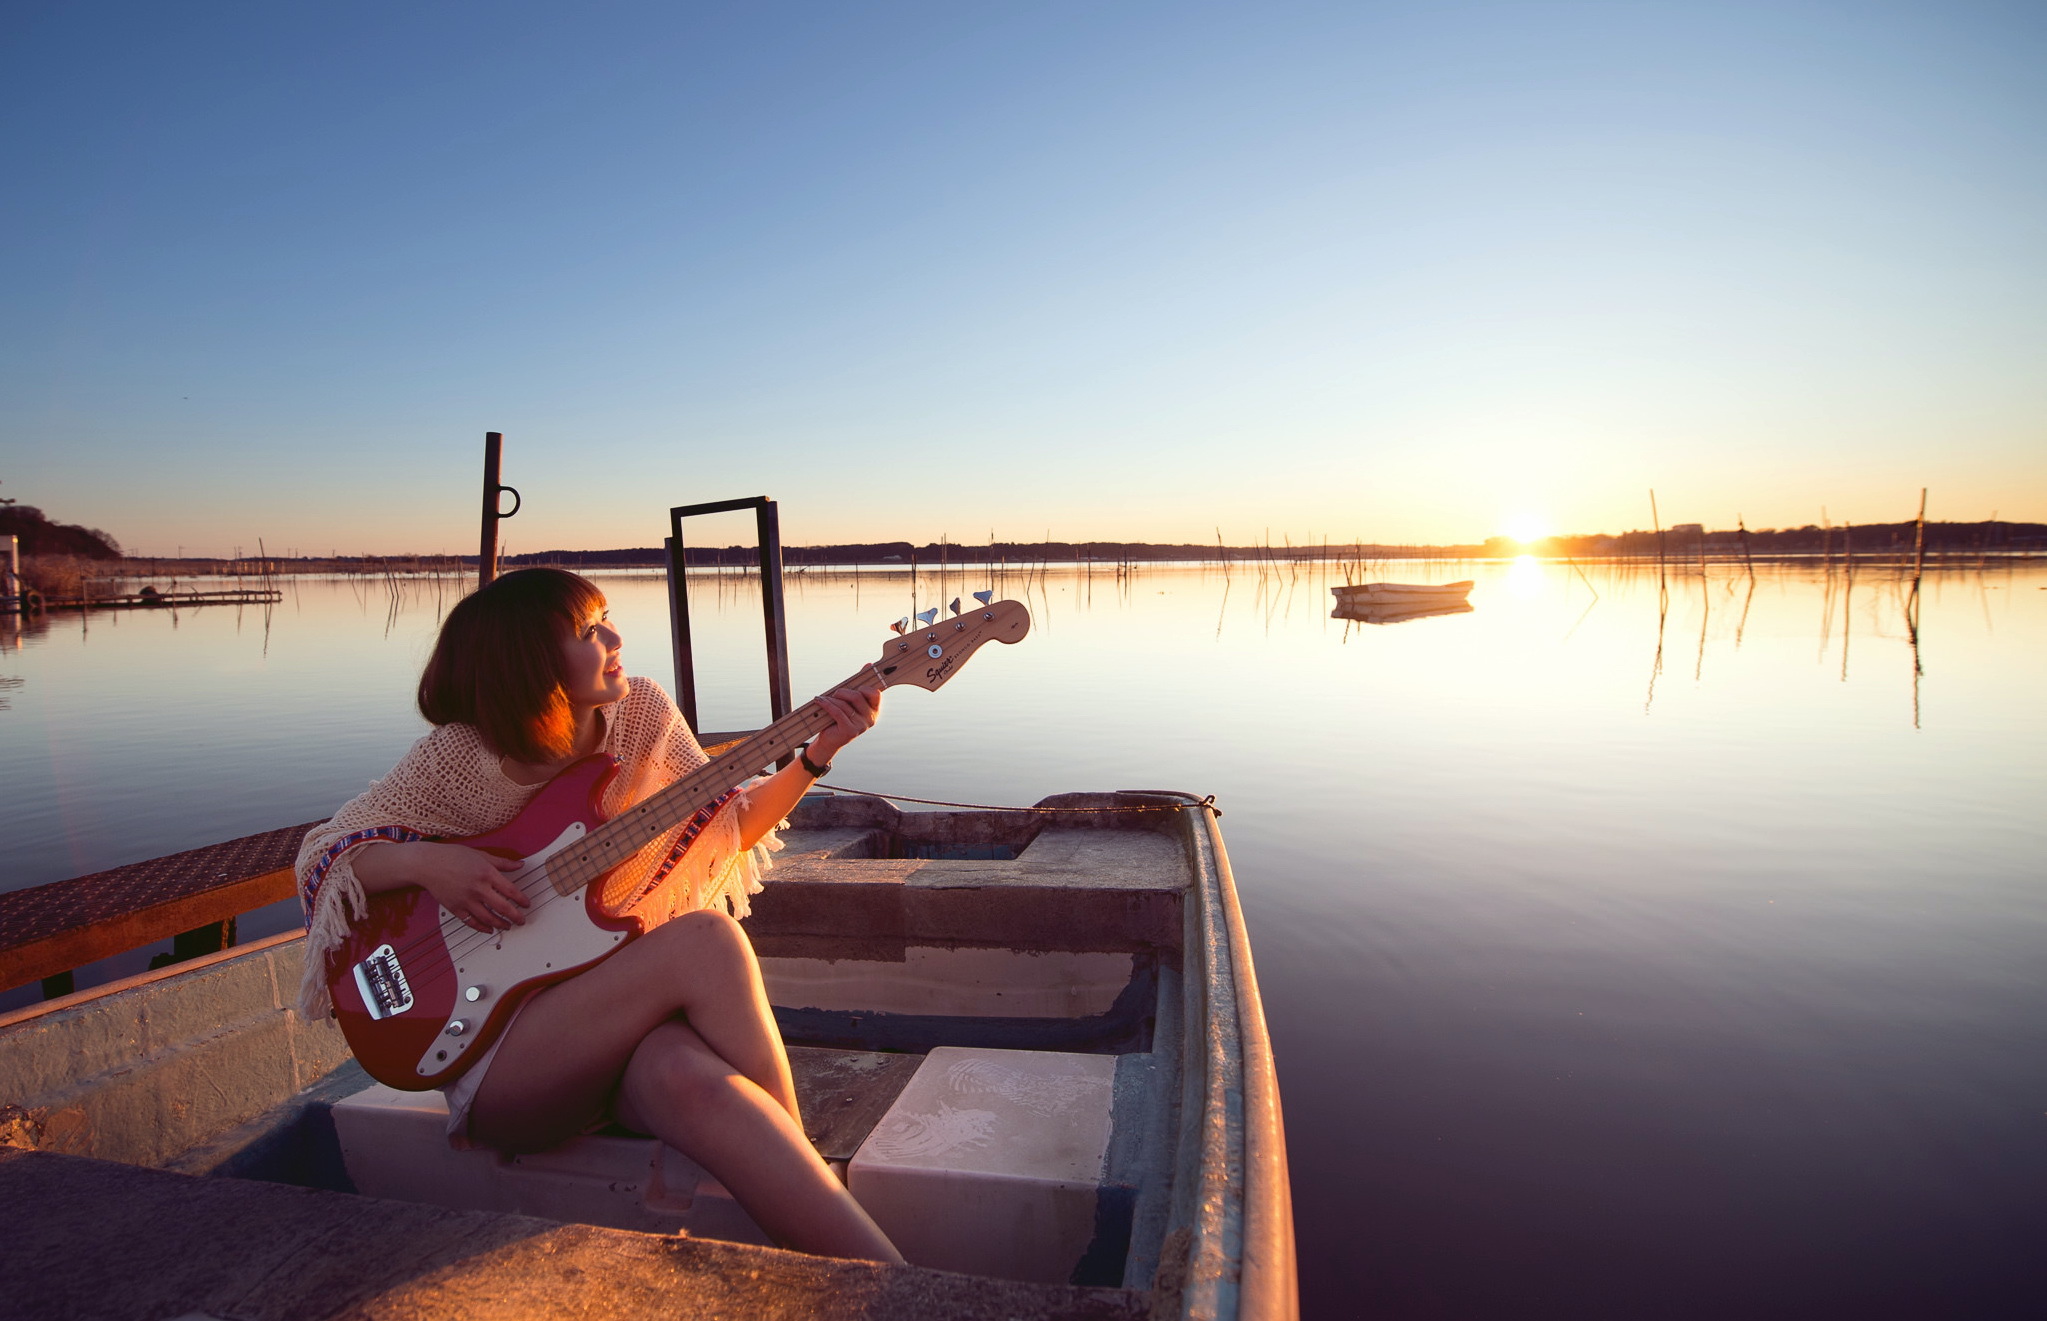 Песни делают вечер нарядным. Девушка с гитарой на берегу. Девушка в лодке. Девушка в лодке на закате. Девушка с гитарой на закате.